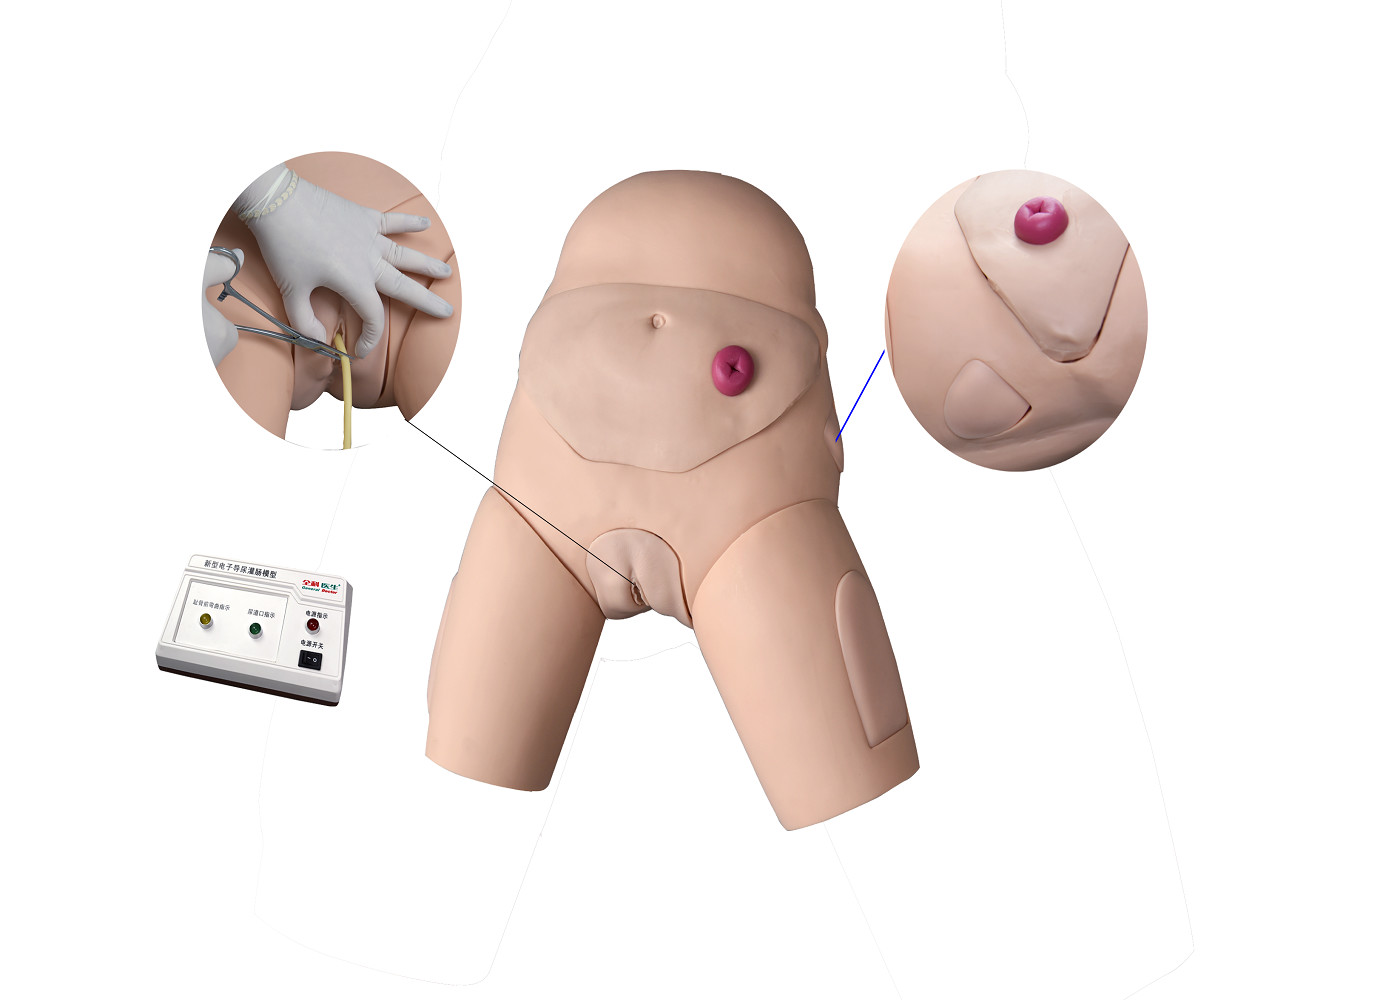 Ηλεκτρονικός Urethral προσομοιωτής καθετηριασμού και κατάρτισης Enema